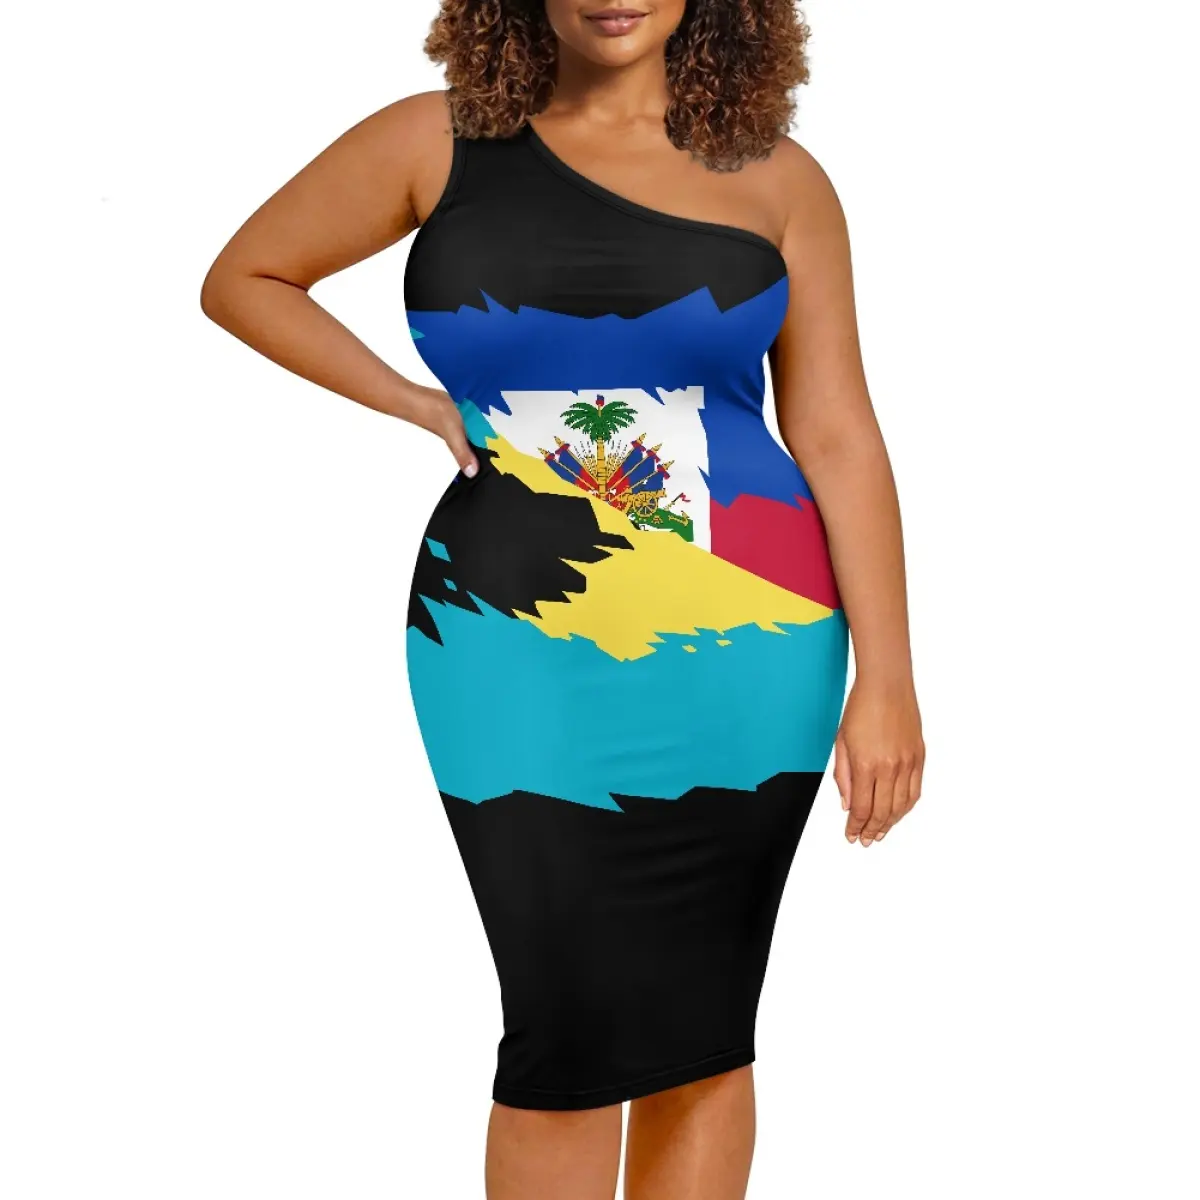 Haiti bahamalar bayrak desen kadınlar için açık omuzlu elbise en iyi fiyat ile toptan özel Logo seksi parti etek Bodycon elbise kadın